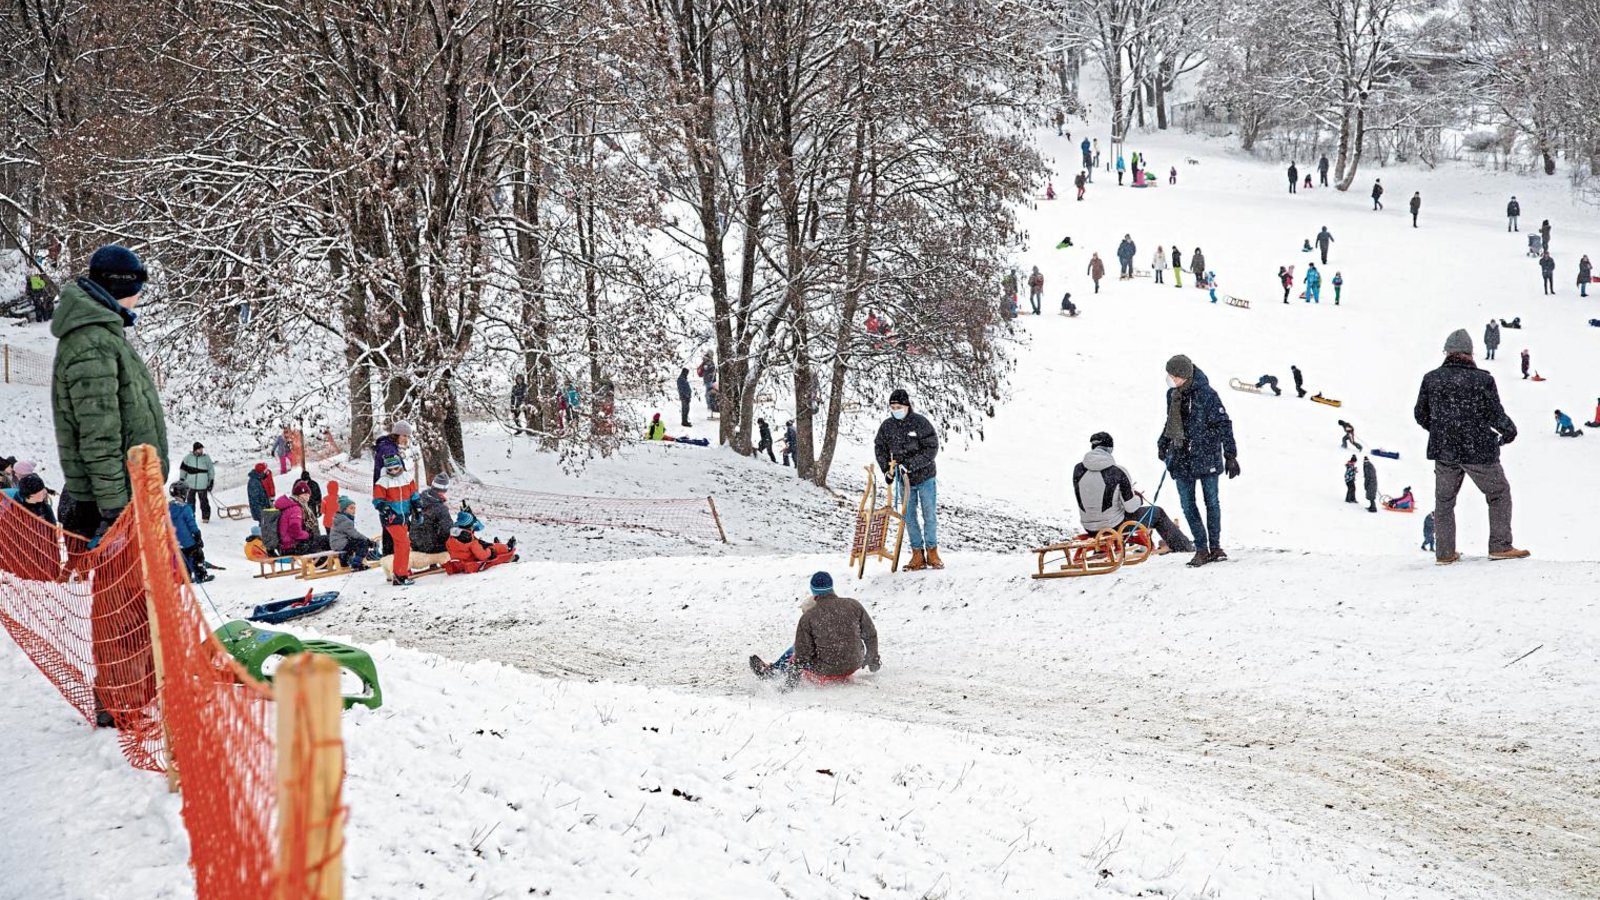 Der viele Neuschnee hat Wintersportler wie hier in München vor allem zum Schlittenfahren auf die Pisten gezogen. Foto: ddp